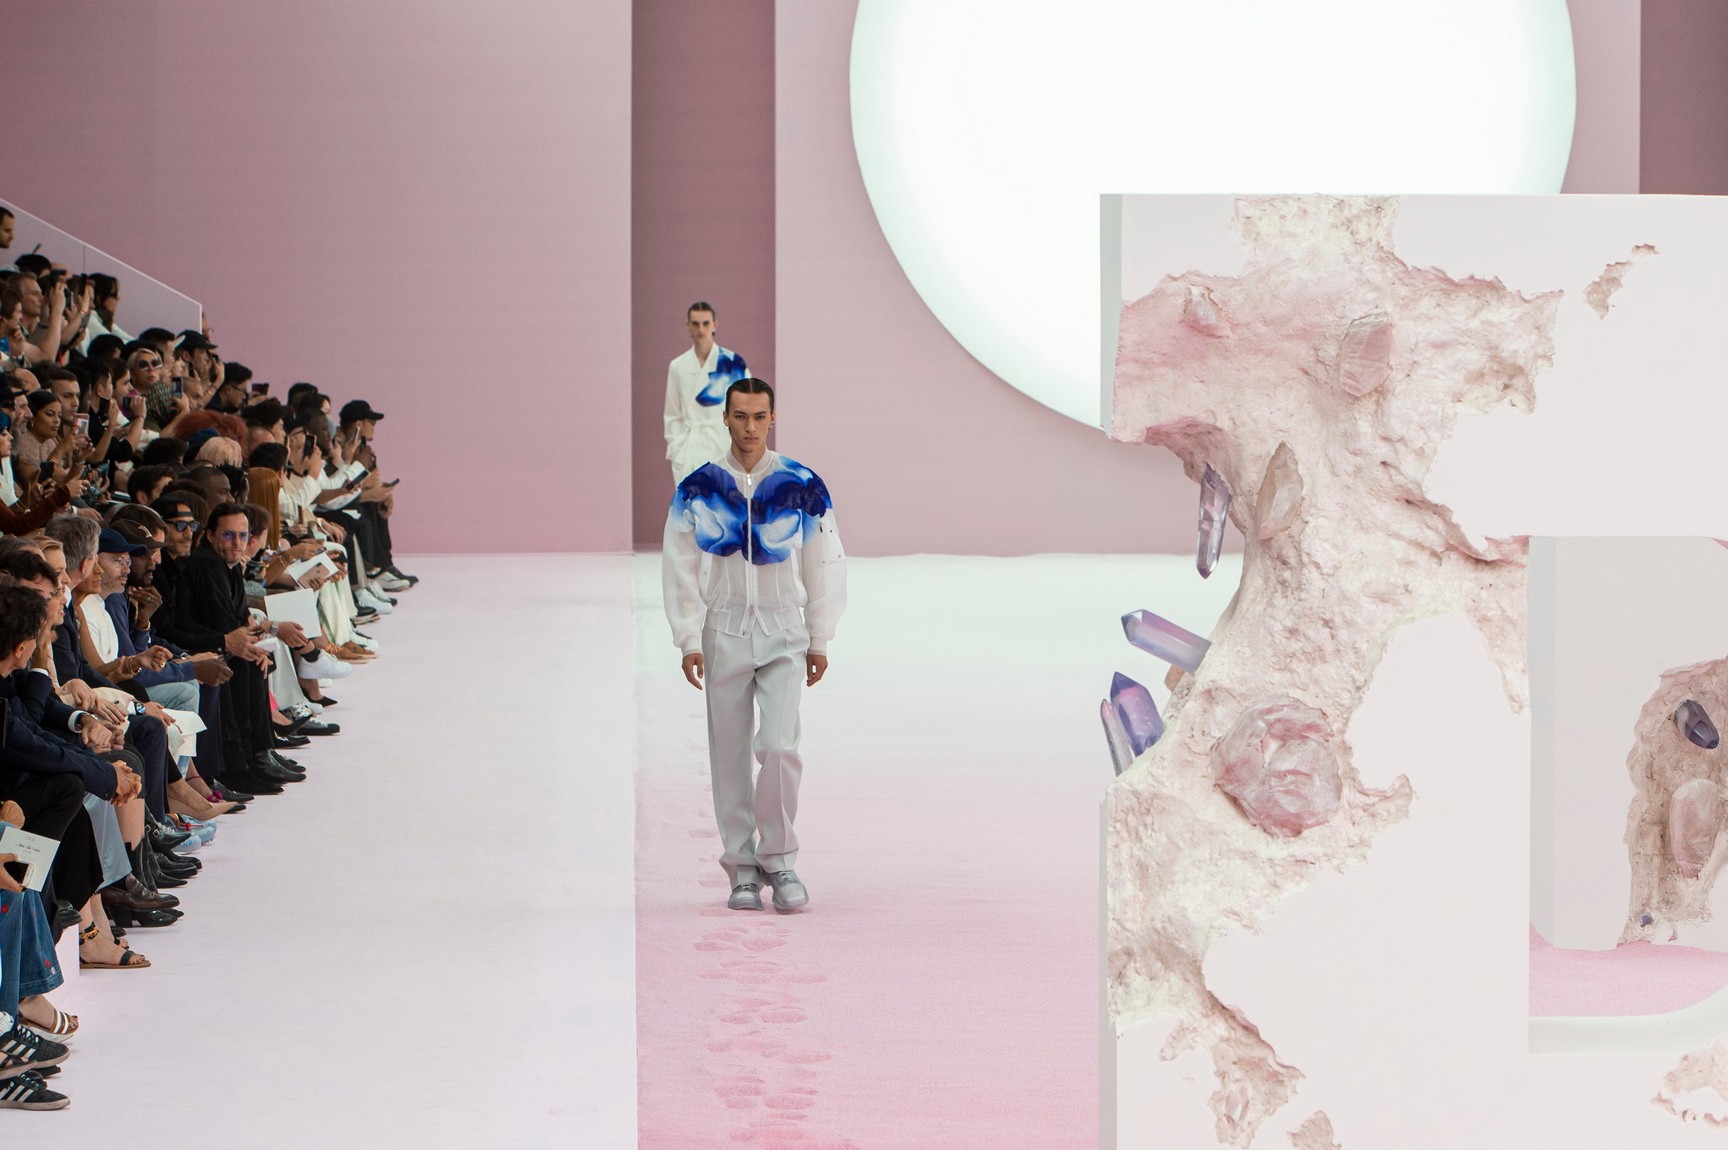 Stars flock to the Dior debut of Kim Jones at Paris menswear